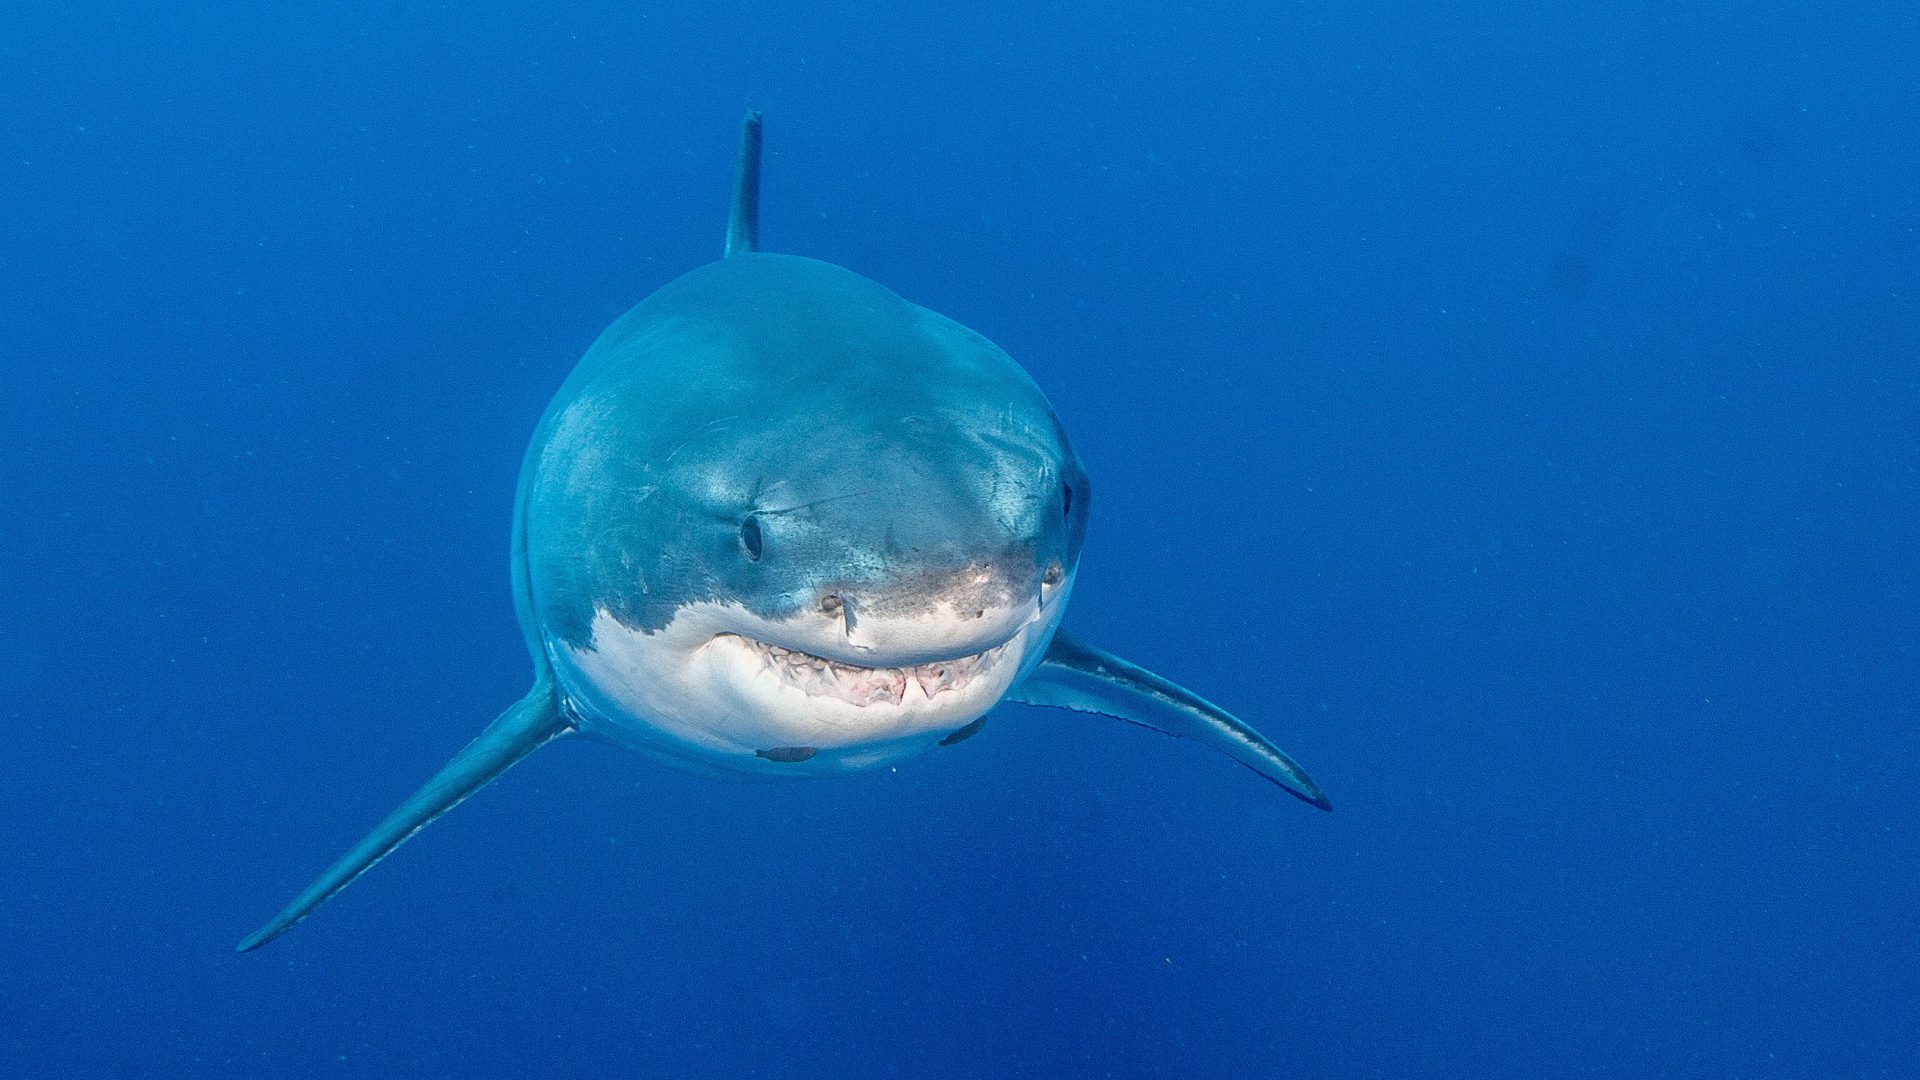 Bedrohte Raubfische: Die Darstellung von Haien im Film "Shallows" sei unrealistisch und gefährlich, betont Sharproject.